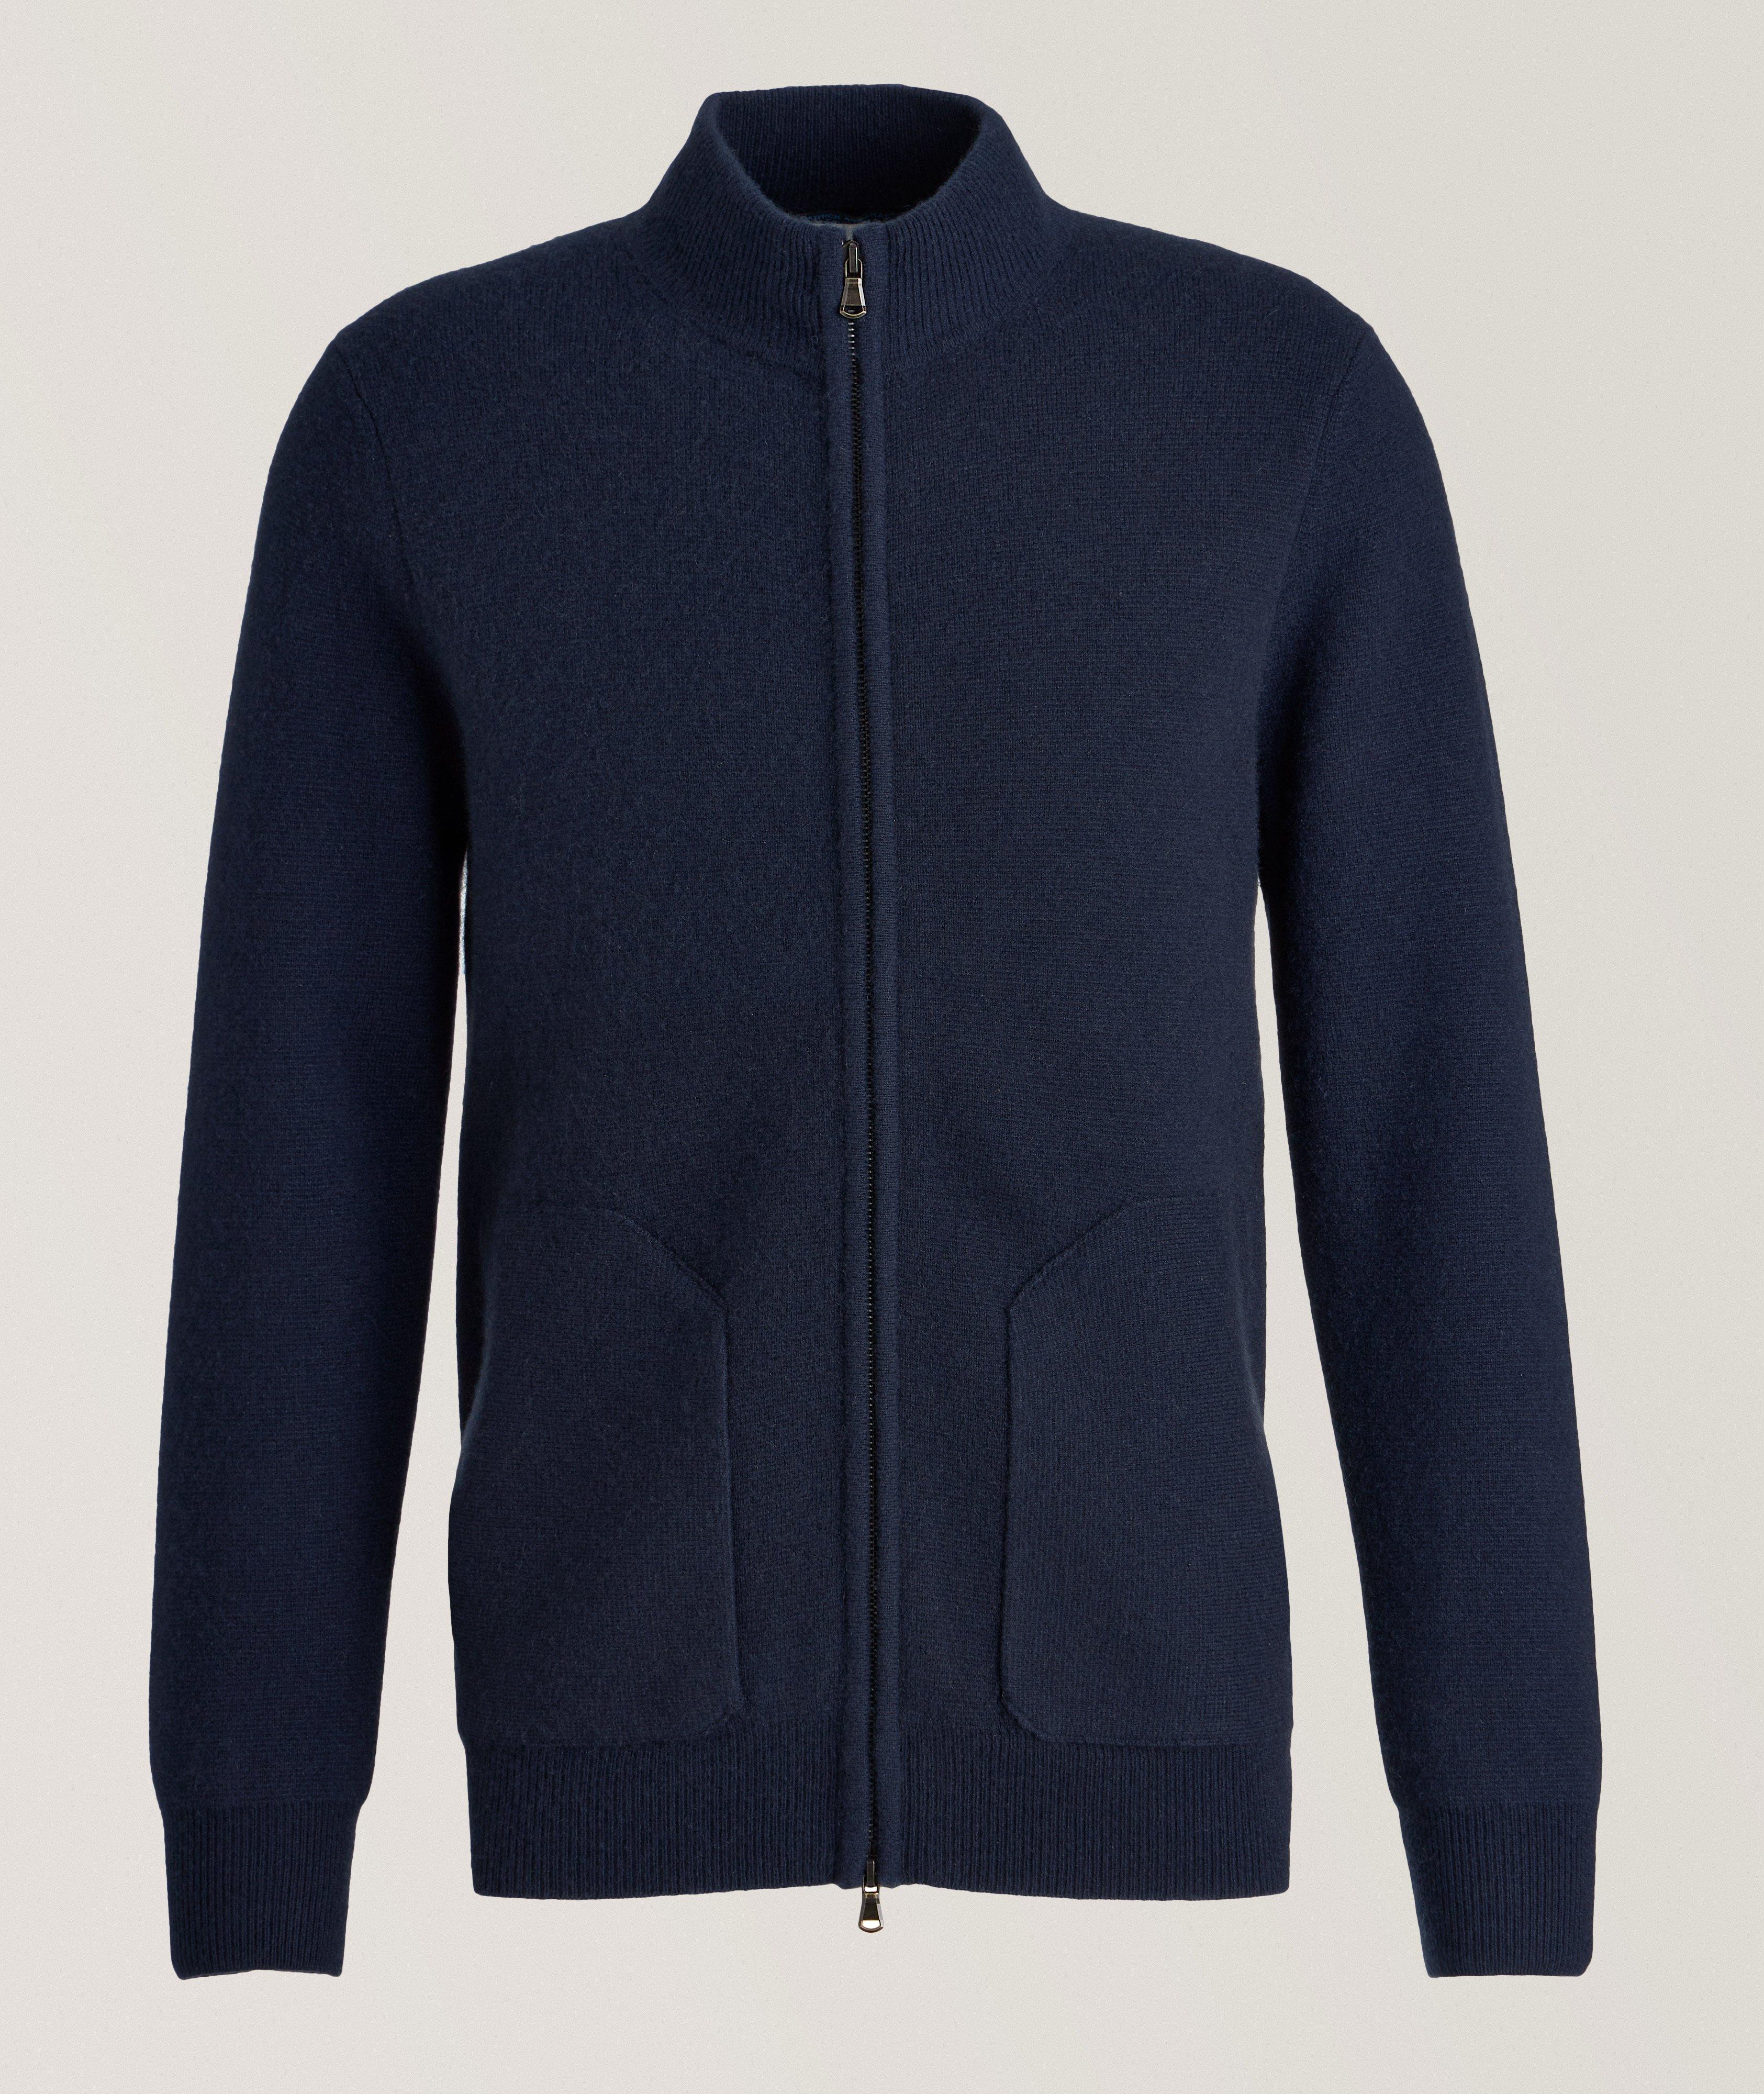 Merino Wool Full-Zip Sweater image 0